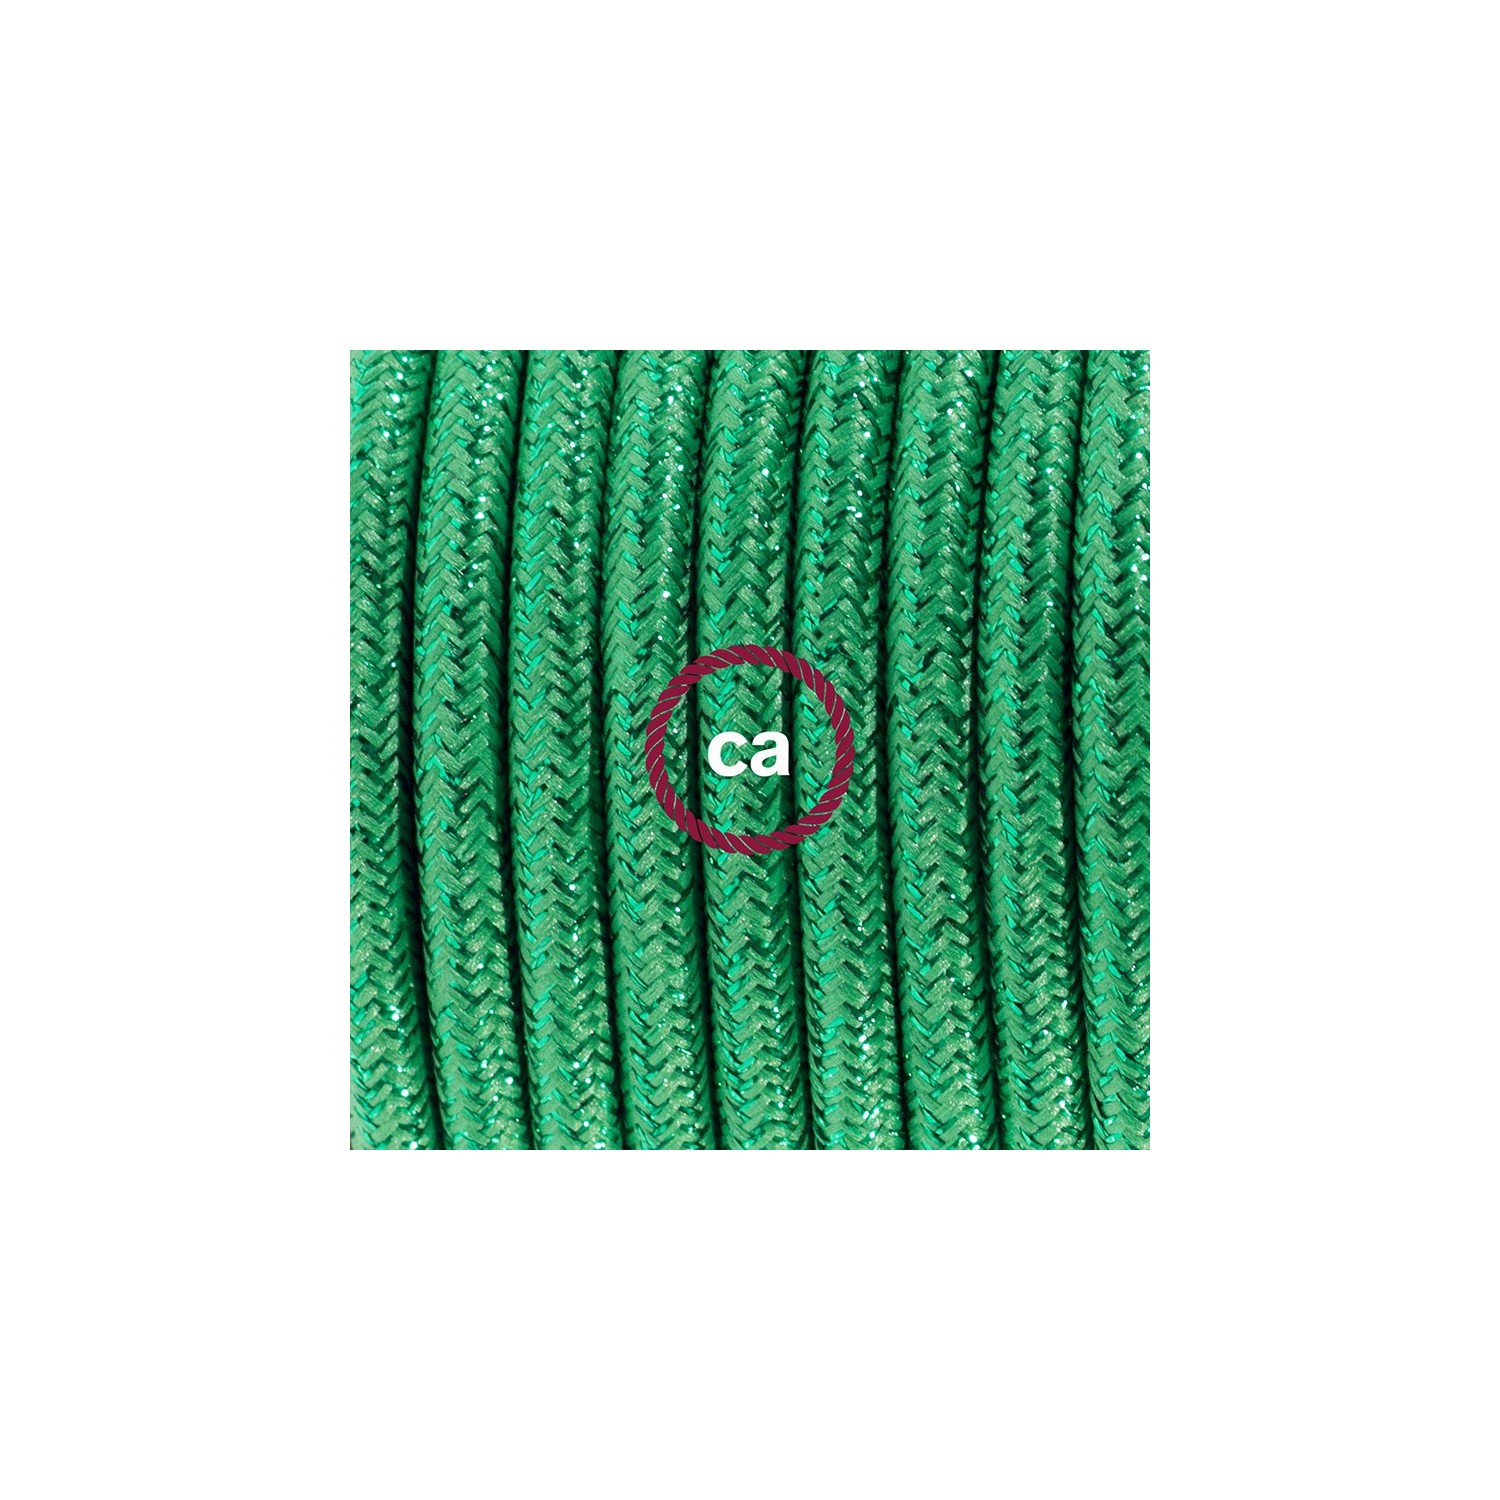 Sladdställ, RL06 Grön Viskos 1,80 m. Välj färg på strömbrytare och kontakt